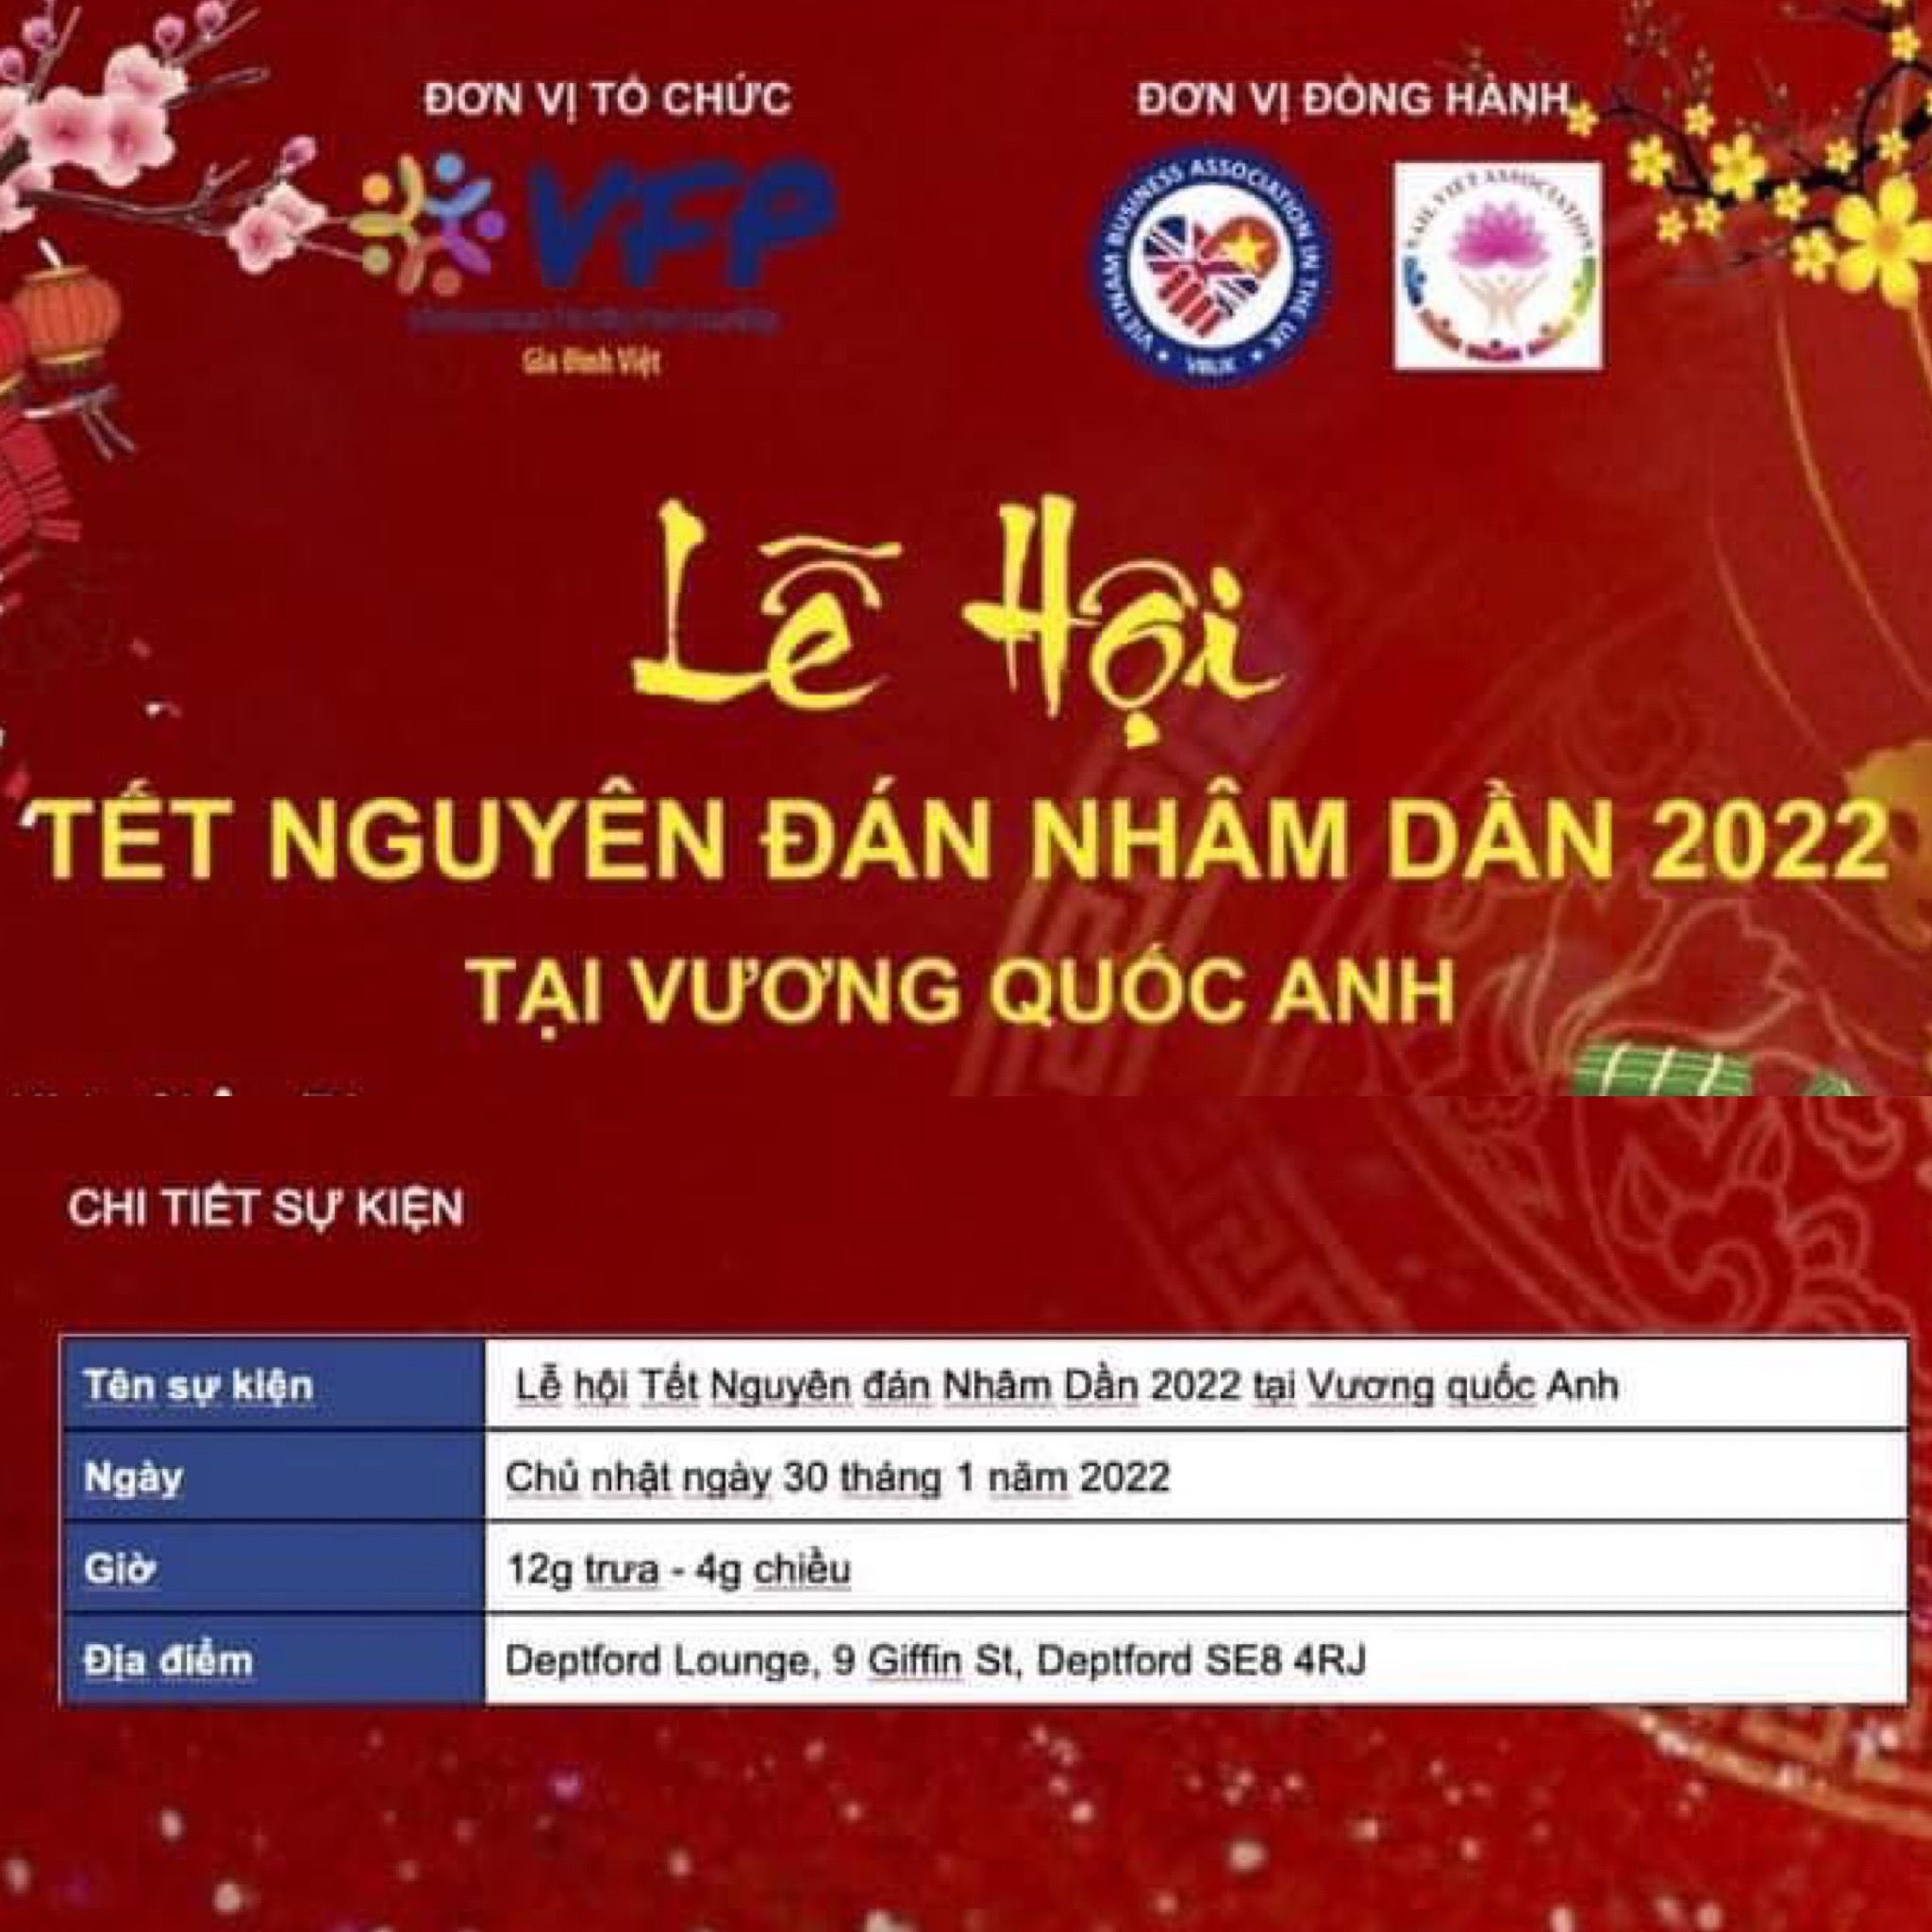 https://vietnamembassy.org.uk/wp-content/uploads/2022/01/Tet-Cong-dong-2022-1.jpg